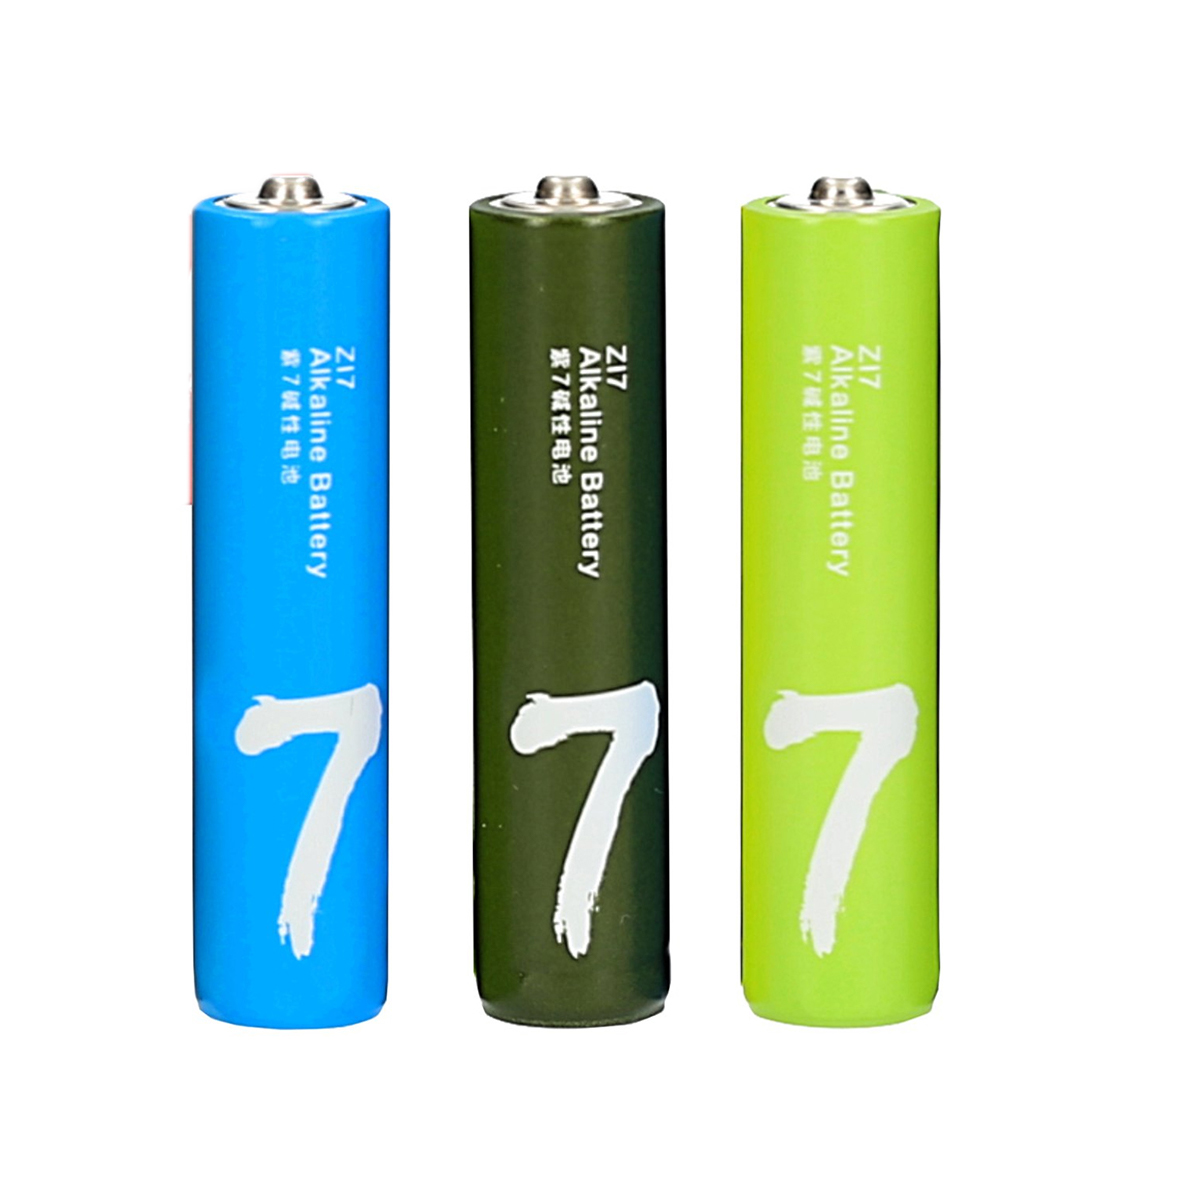 باتری نیم قلمی شیائومی مدل ZI7-3 بسته 3 عددی